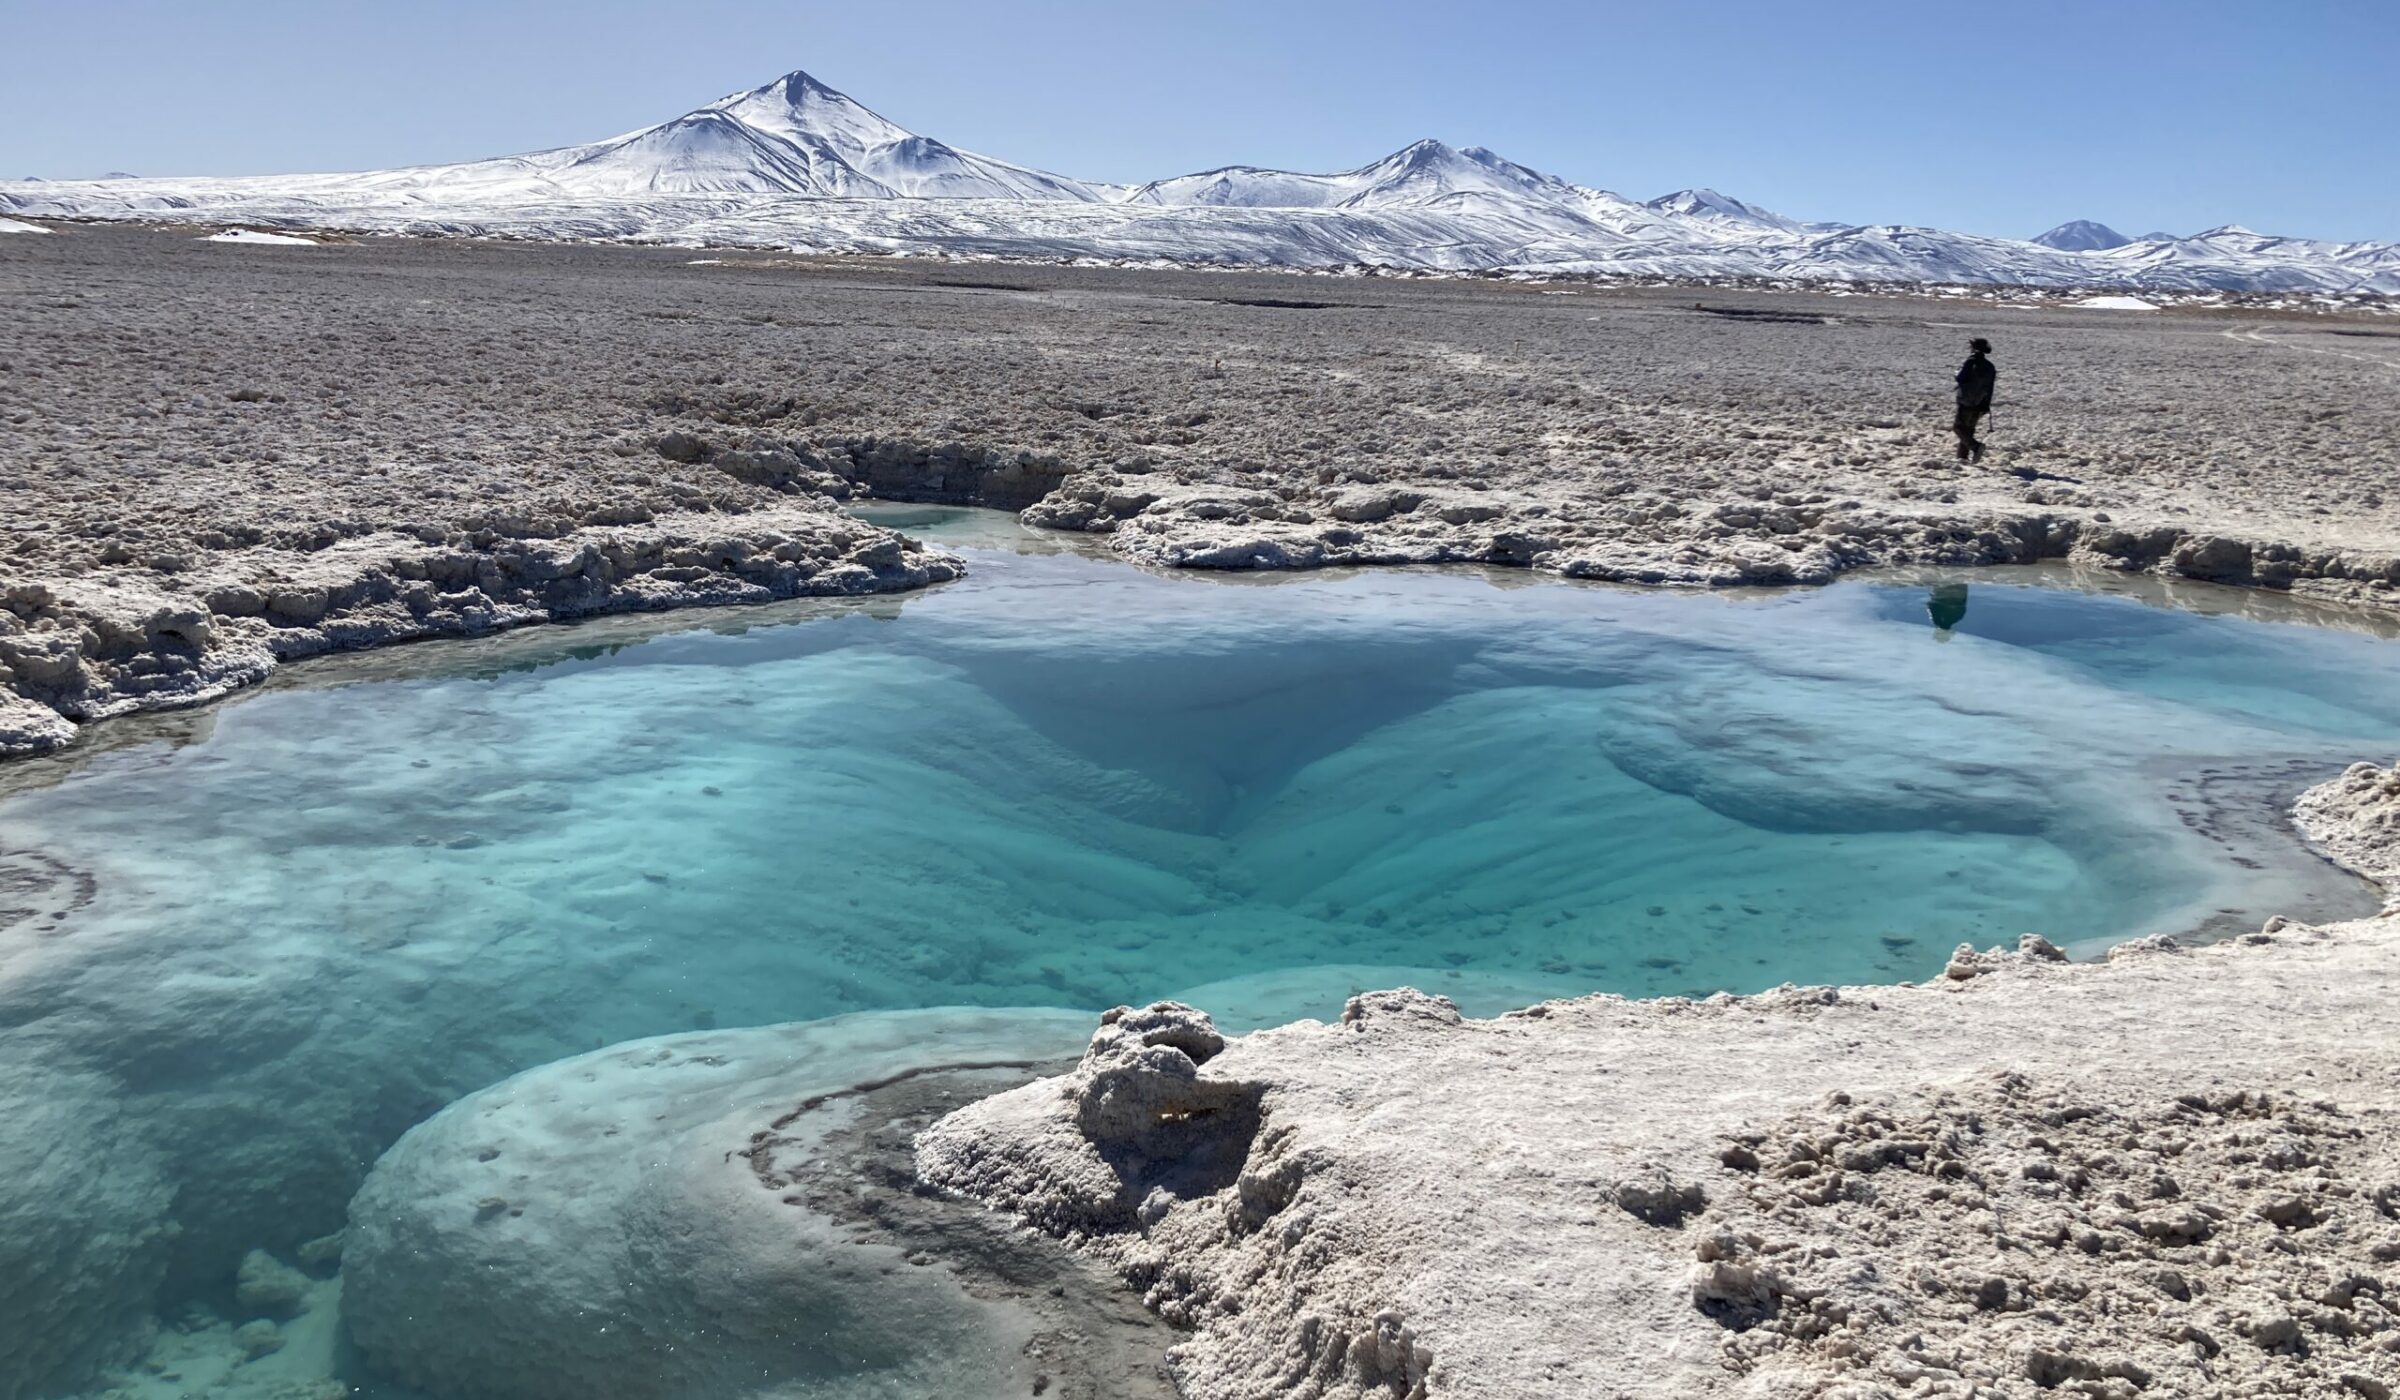 Aguas en el altiplano de Atacama: Los atractivos alrededores de los salares Pedernales y Maricunga